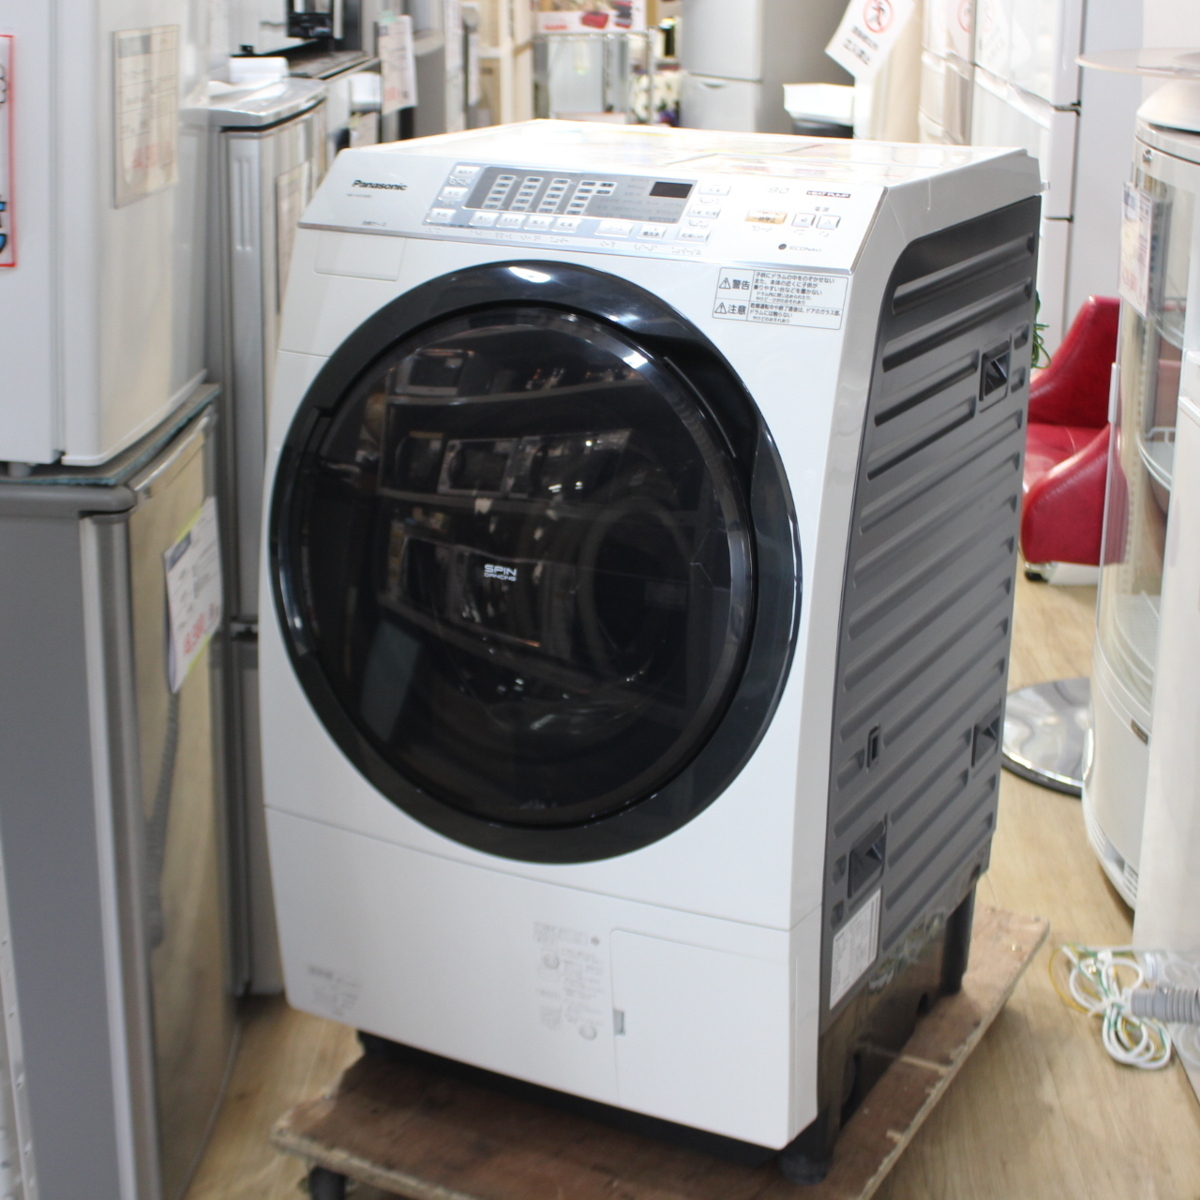 パナソニック ななめ型ドラム式洗濯乾燥機 9kg 左開き 泡洗浄 エコナビ搭載 NA-VX5300L クリスタルホワイト 2014年製